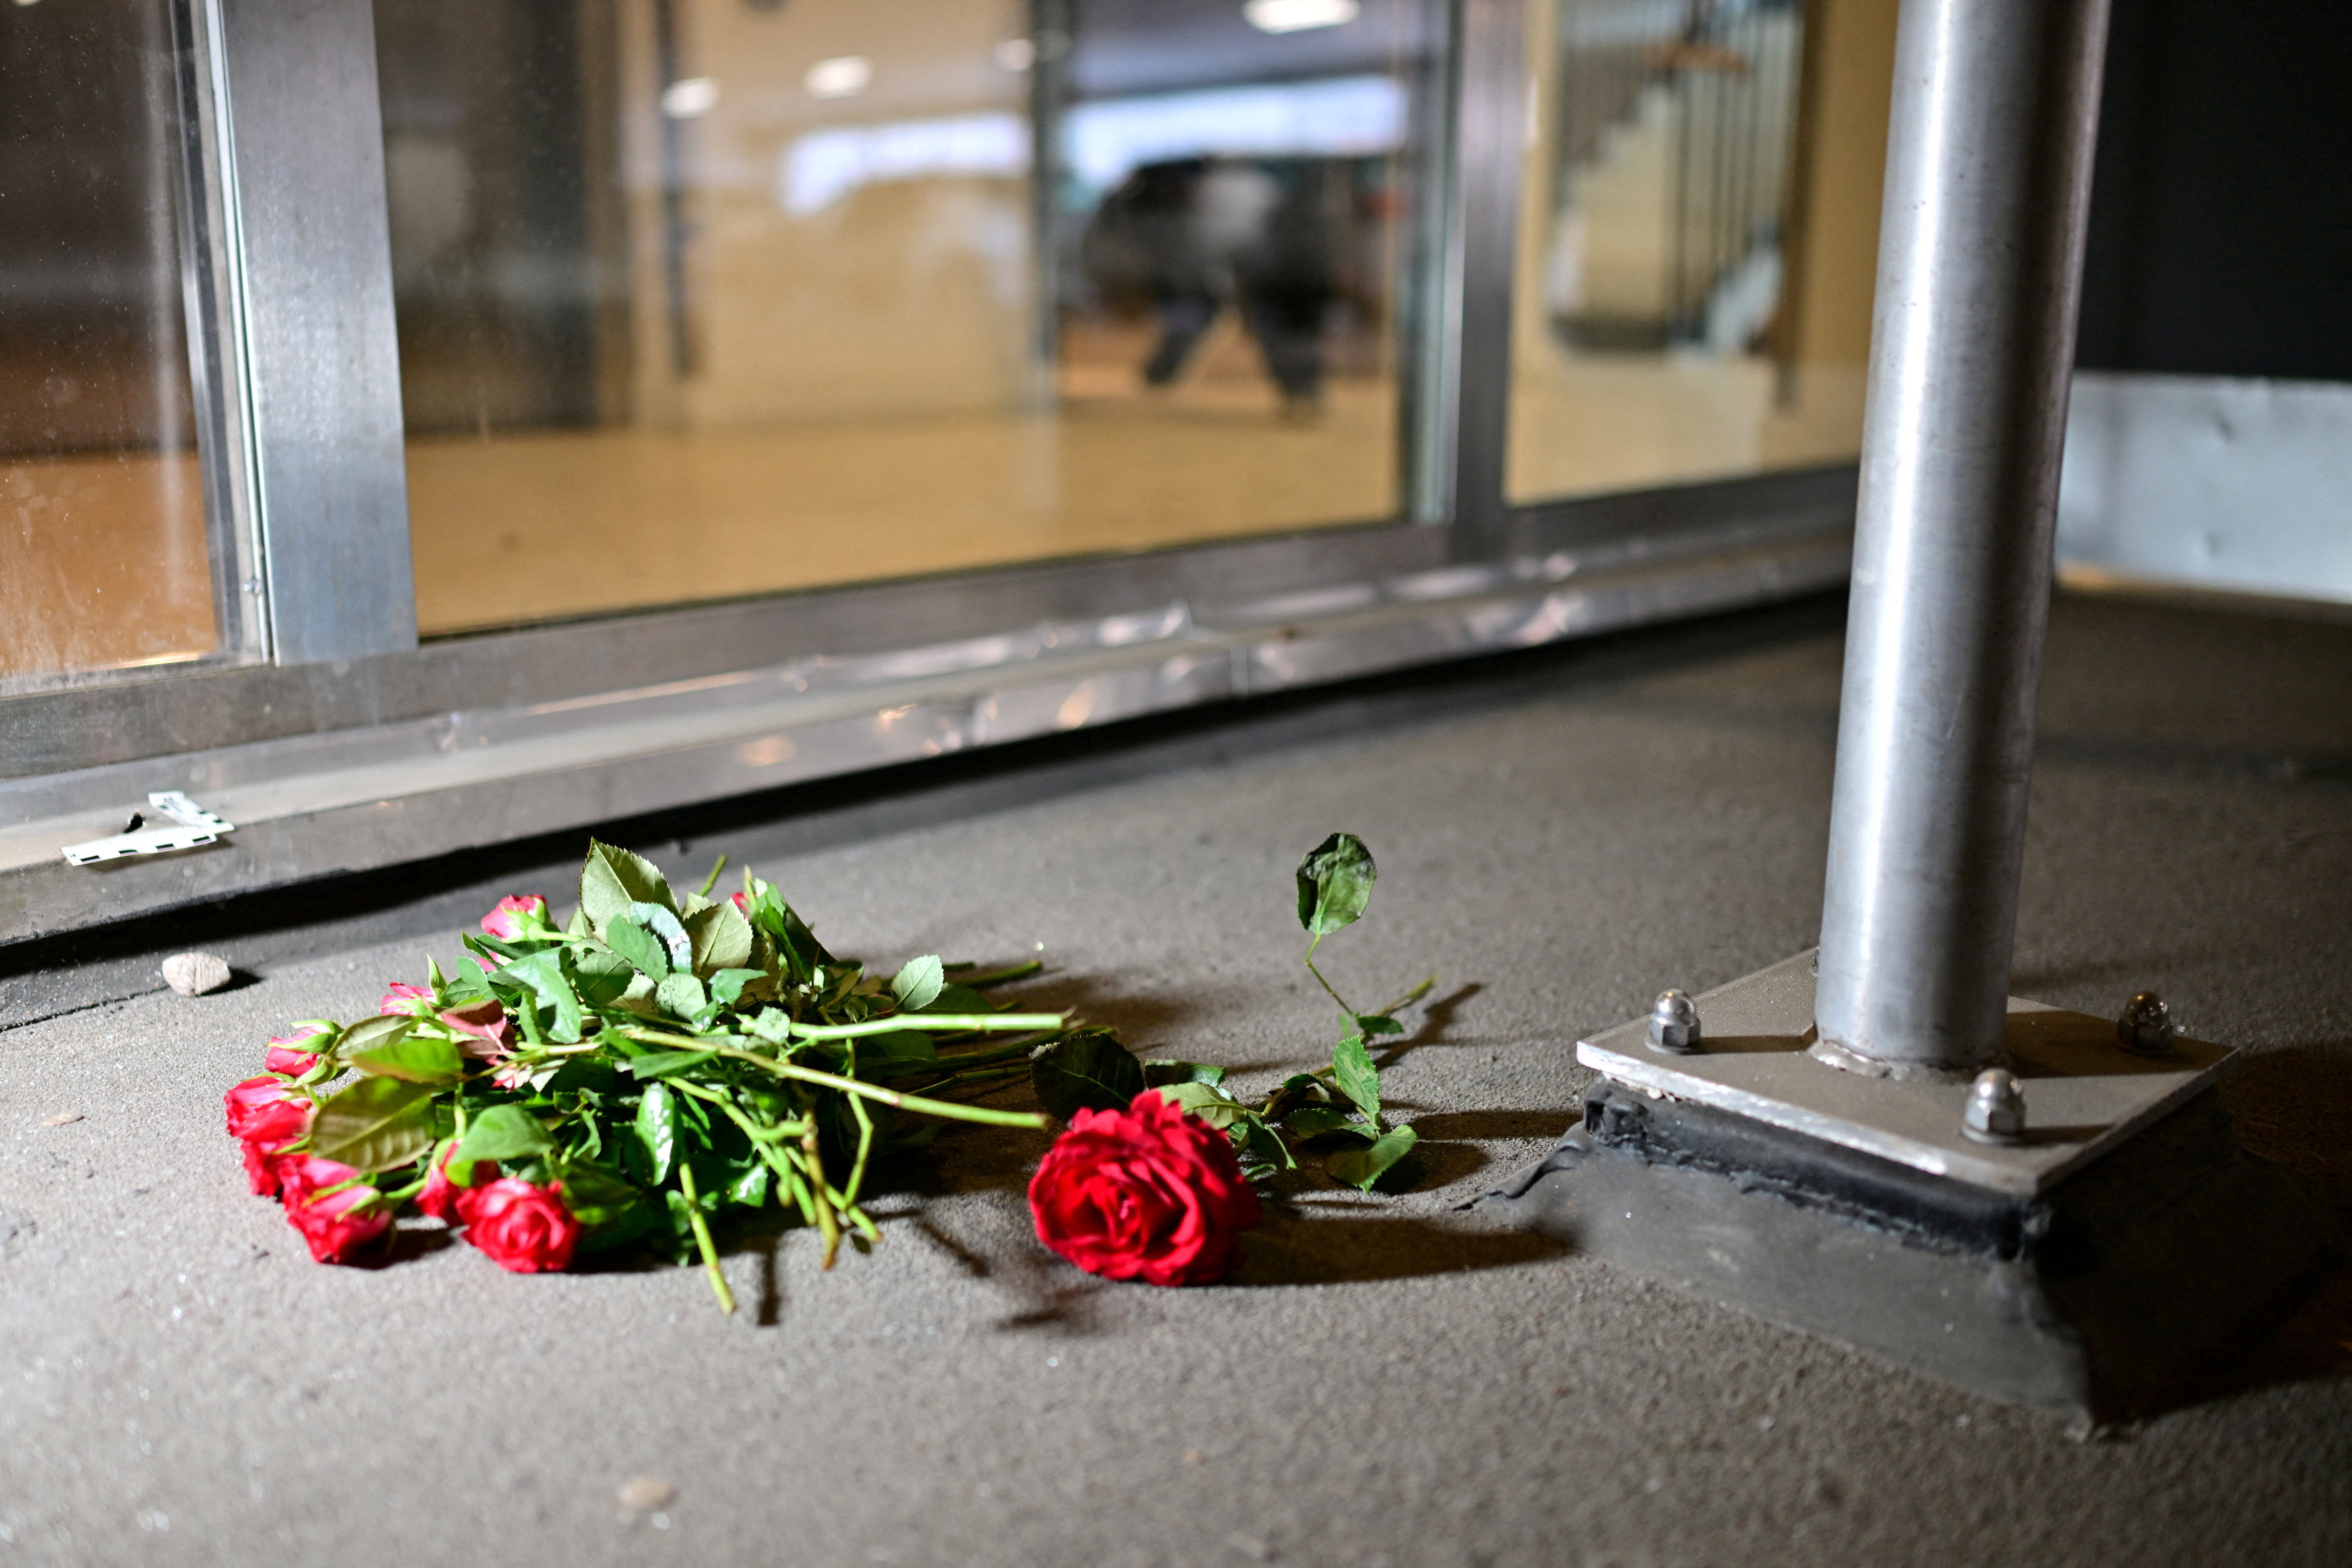 Rapper C. Gambino was shot to death in a parking garage in Gothenburg